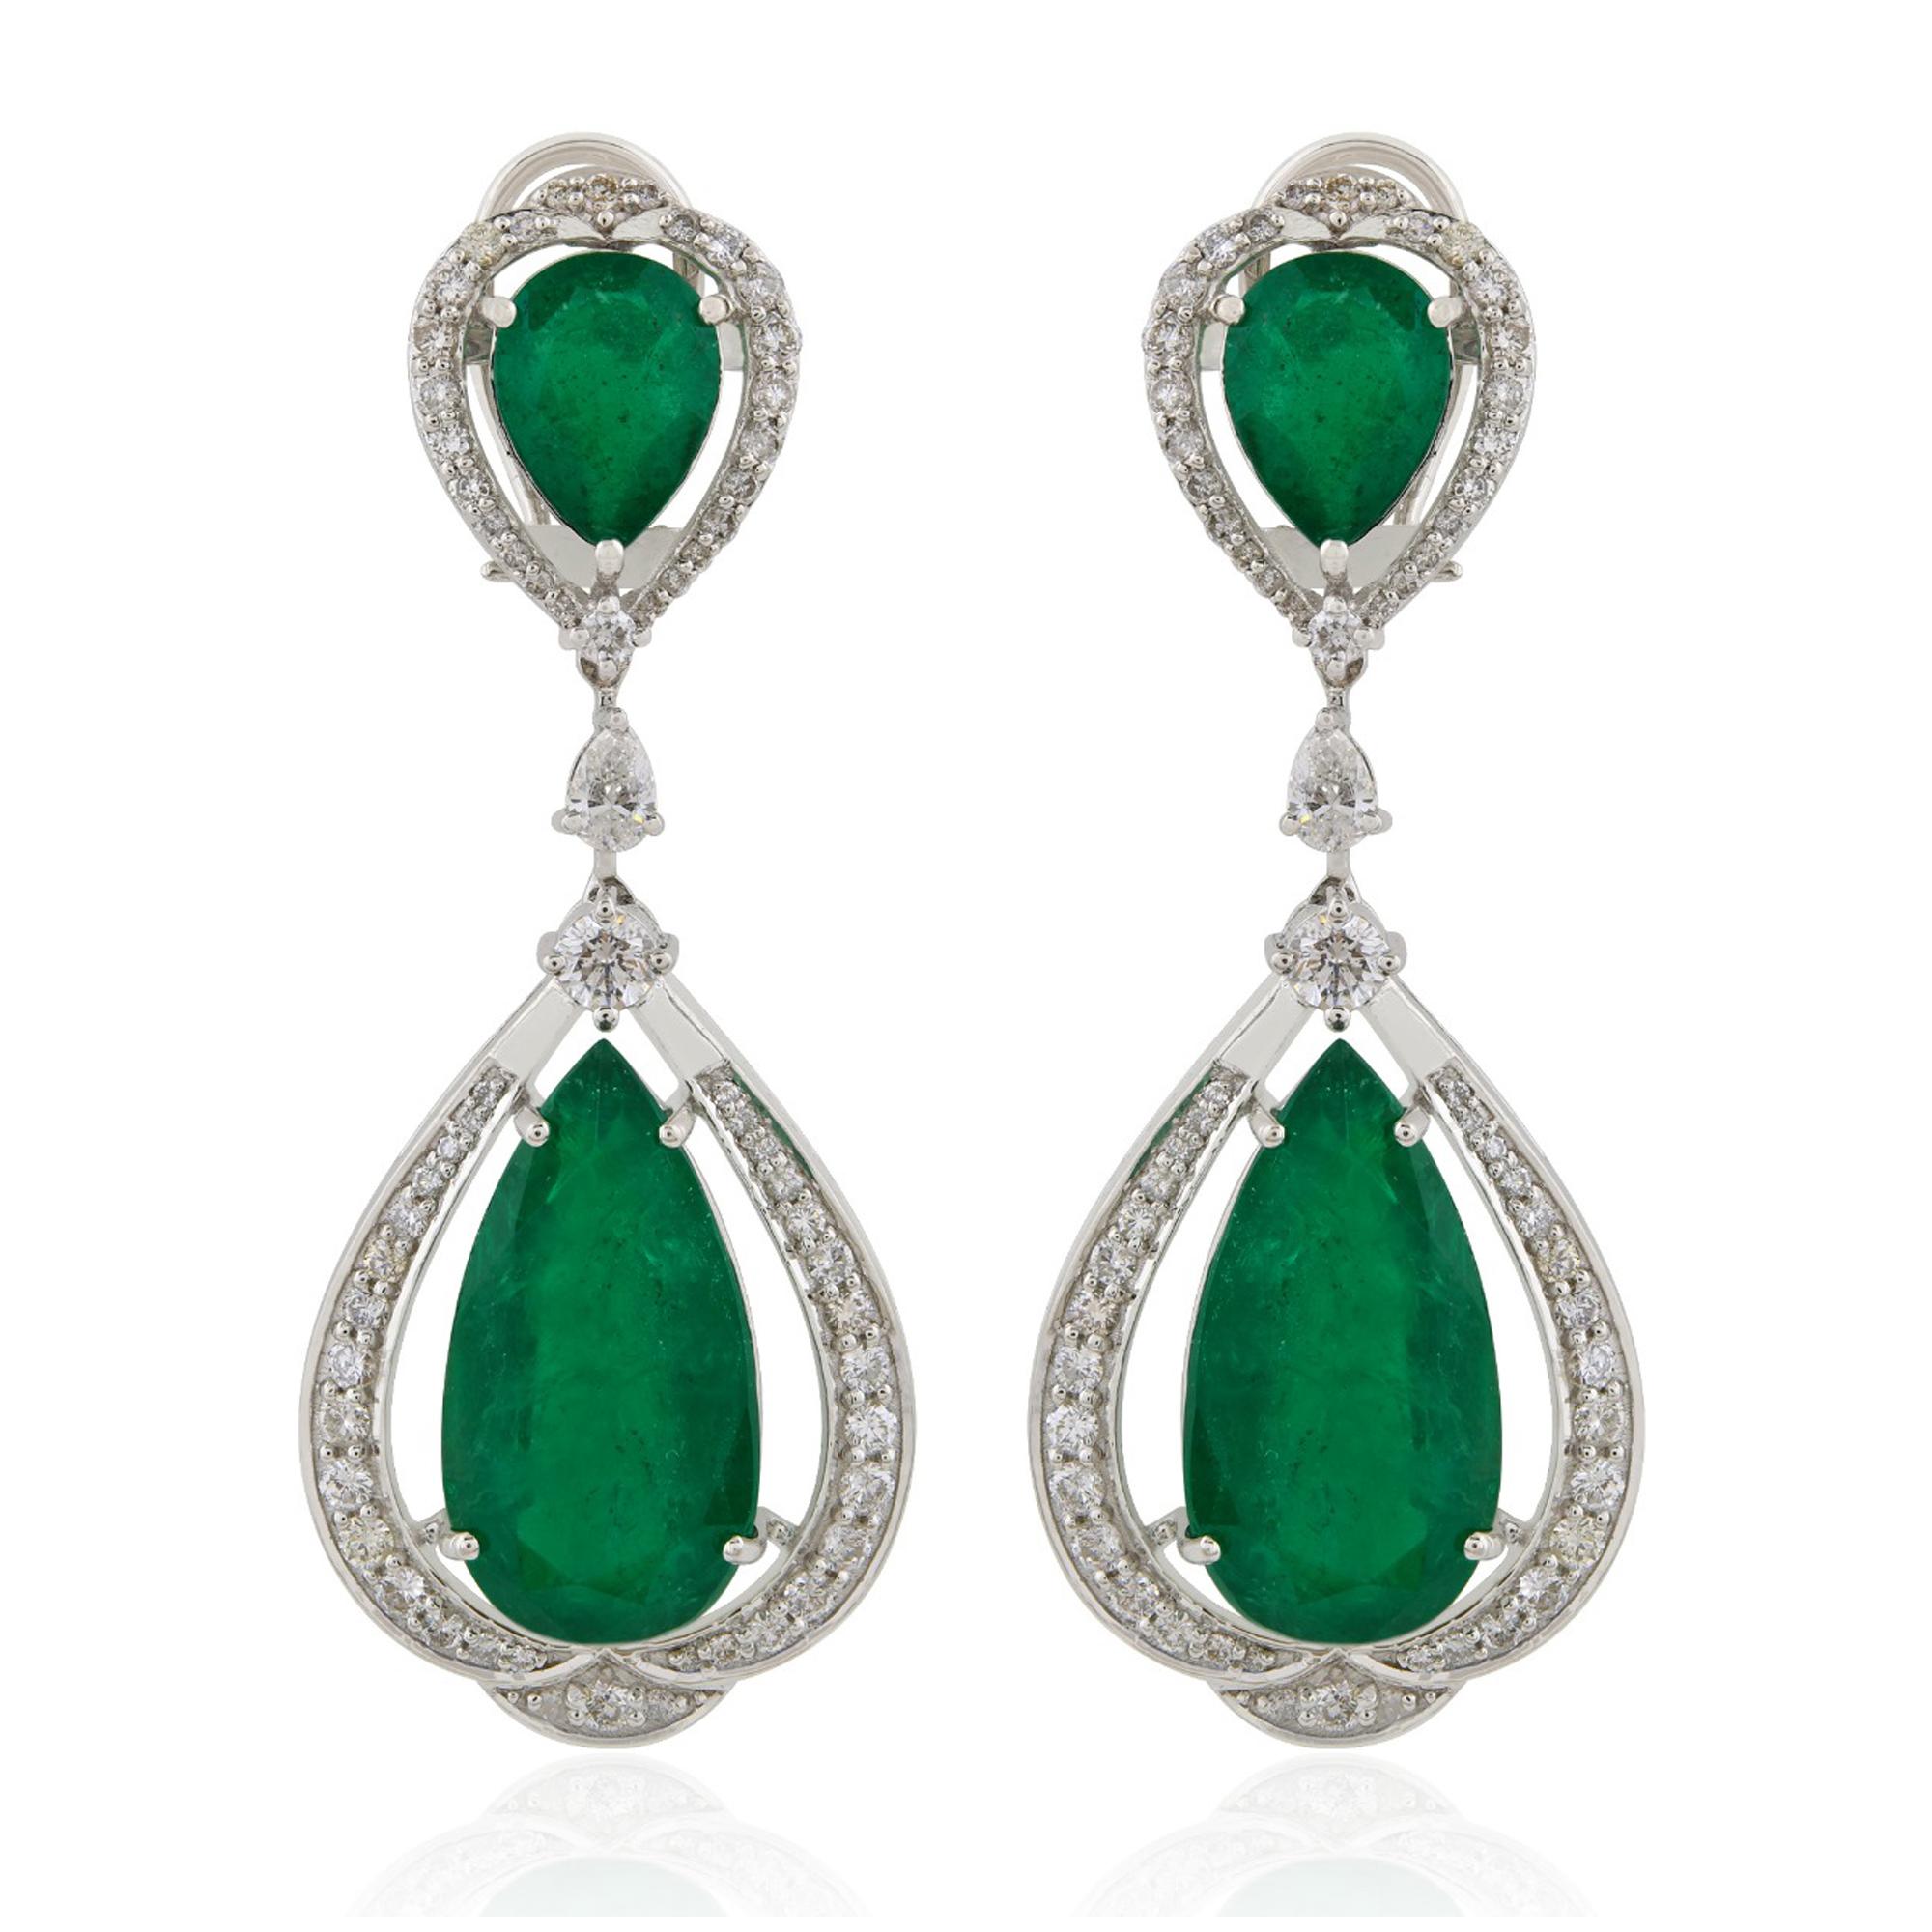 Wir stellen Ihnen unsere neueste Errungenschaft in Sachen Luxus vor: die sambischen Smaragd-Ohrringe, die sorgfältig aus 18 Karat Weißgold gefertigt und mit strahlenden Diamanten verziert sind. Diese Ohrringe sind nicht nur ein Accessoire, sondern